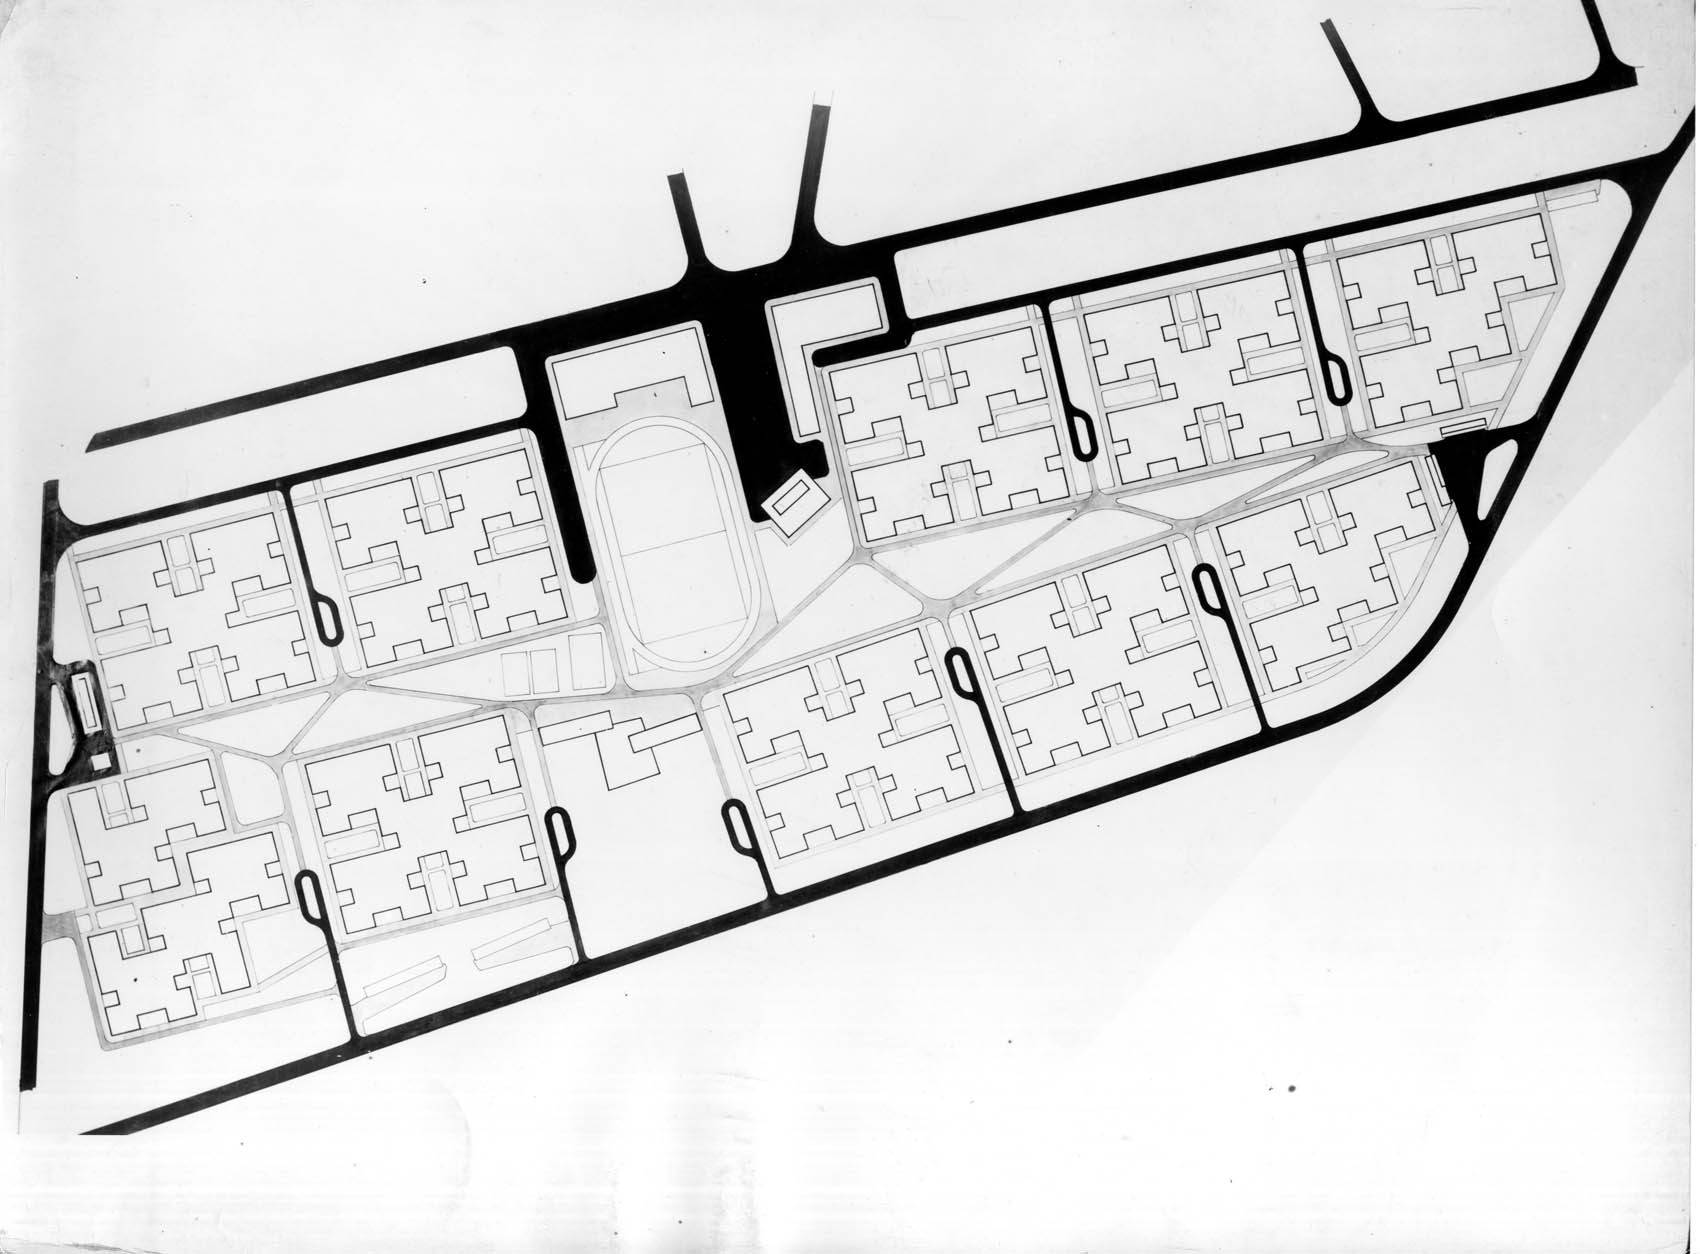 Plan at Douar Doum for 5000 inhabitants